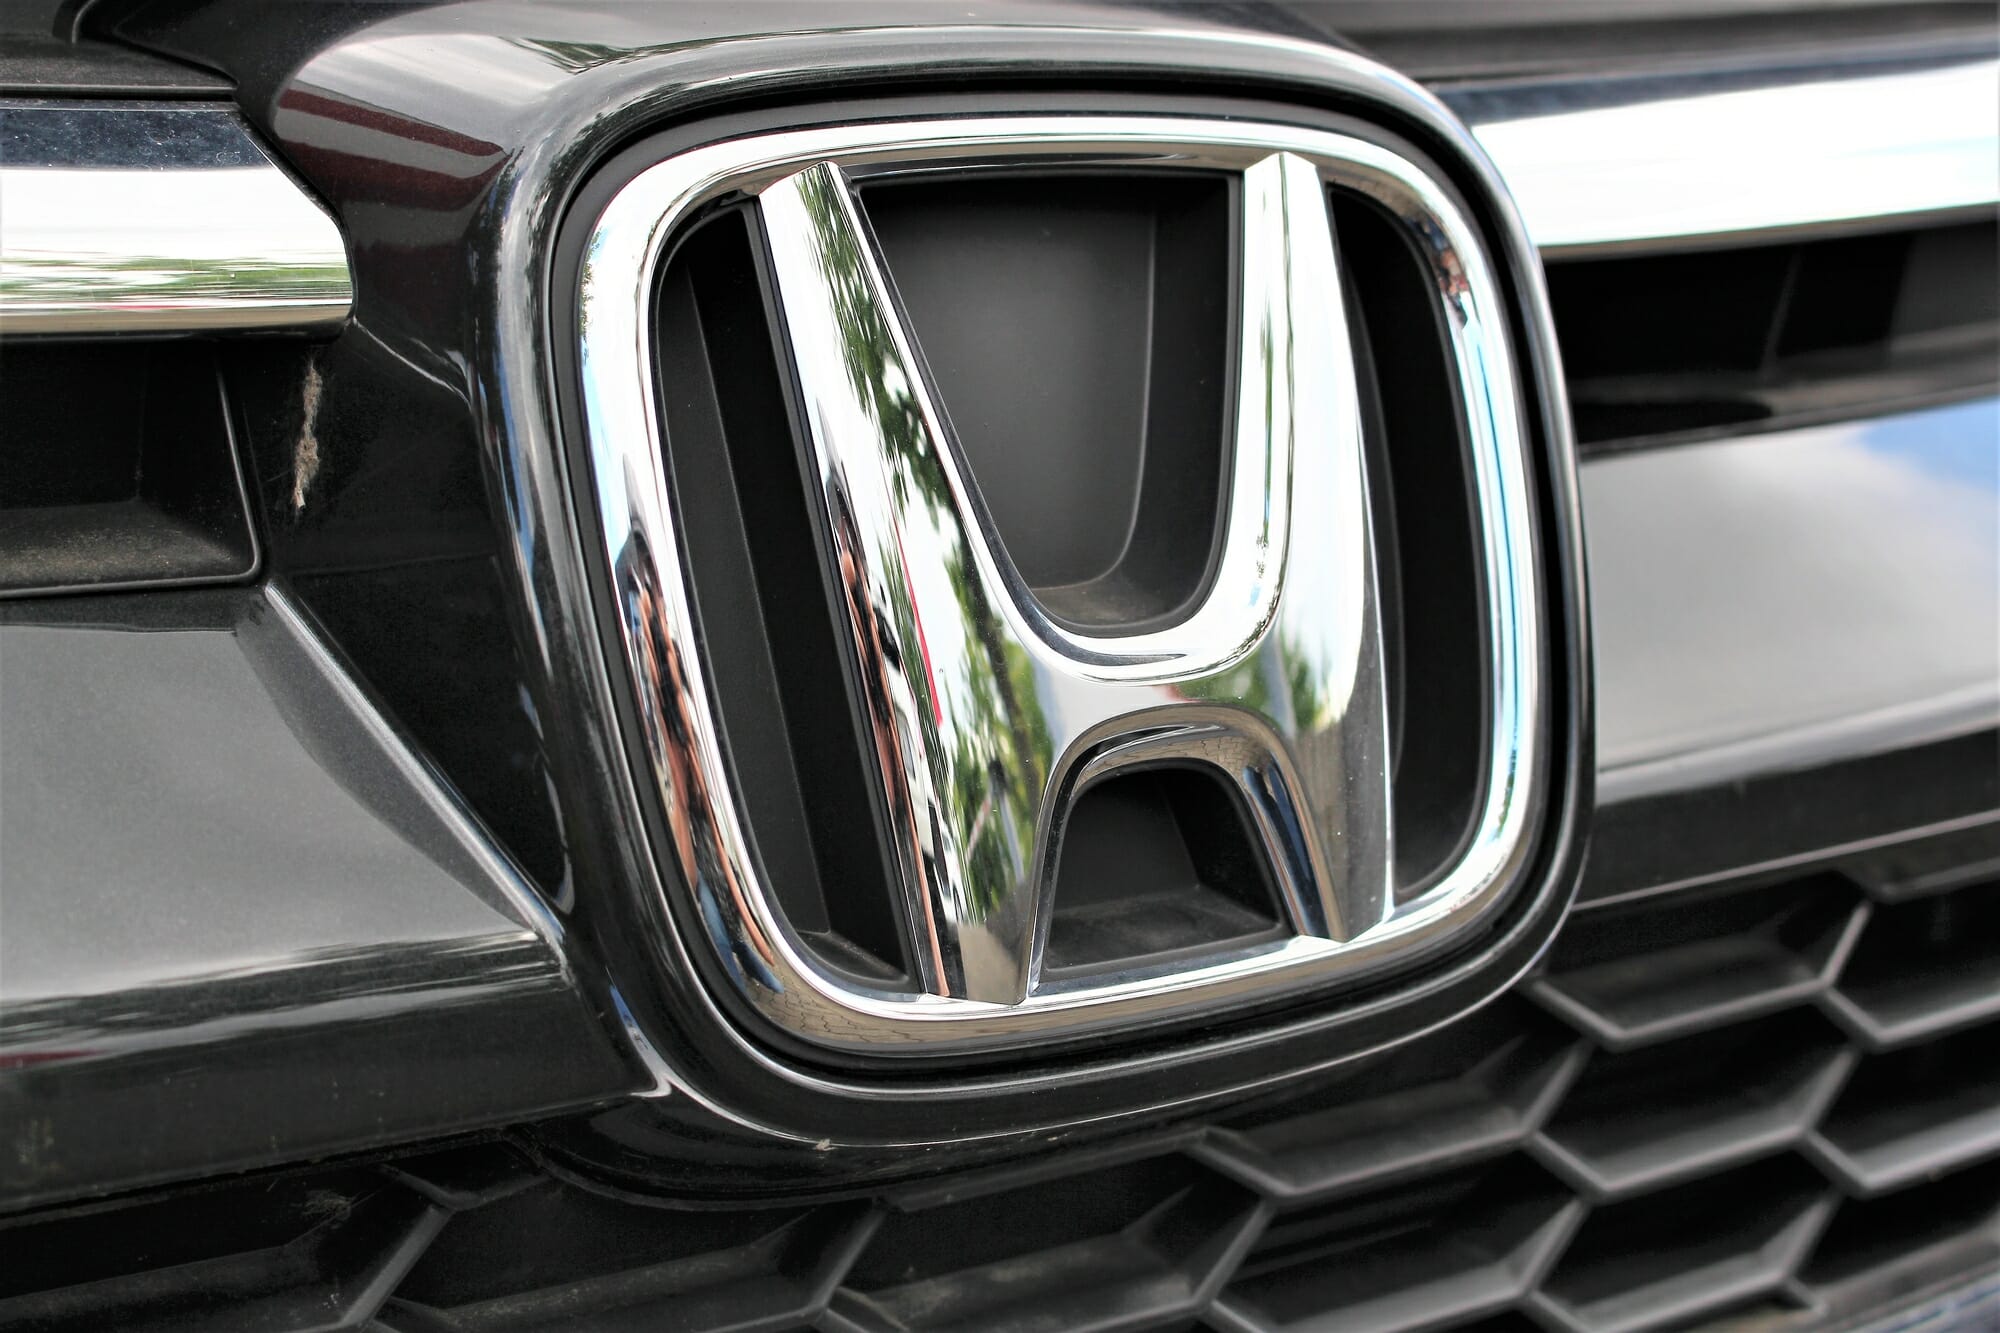 Honda Paint Recalls? What? Here's The Rundown - VehicleHistory